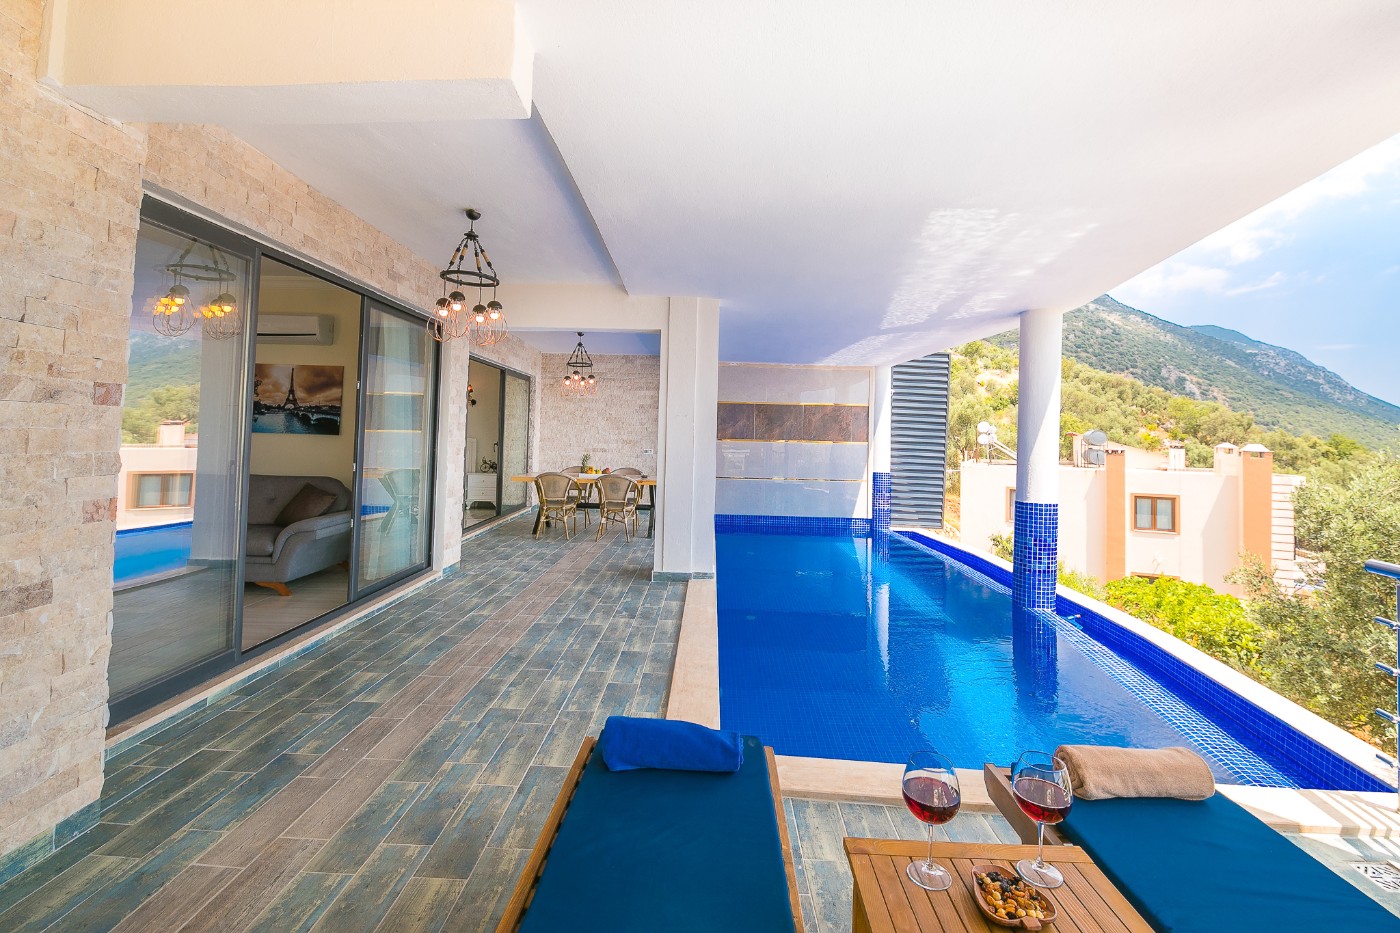 Kalkan Akbel'de Enfes Deniz Manzaralı, Korunaklı Özel Havuzlu, Kiralık Yazlık Villa